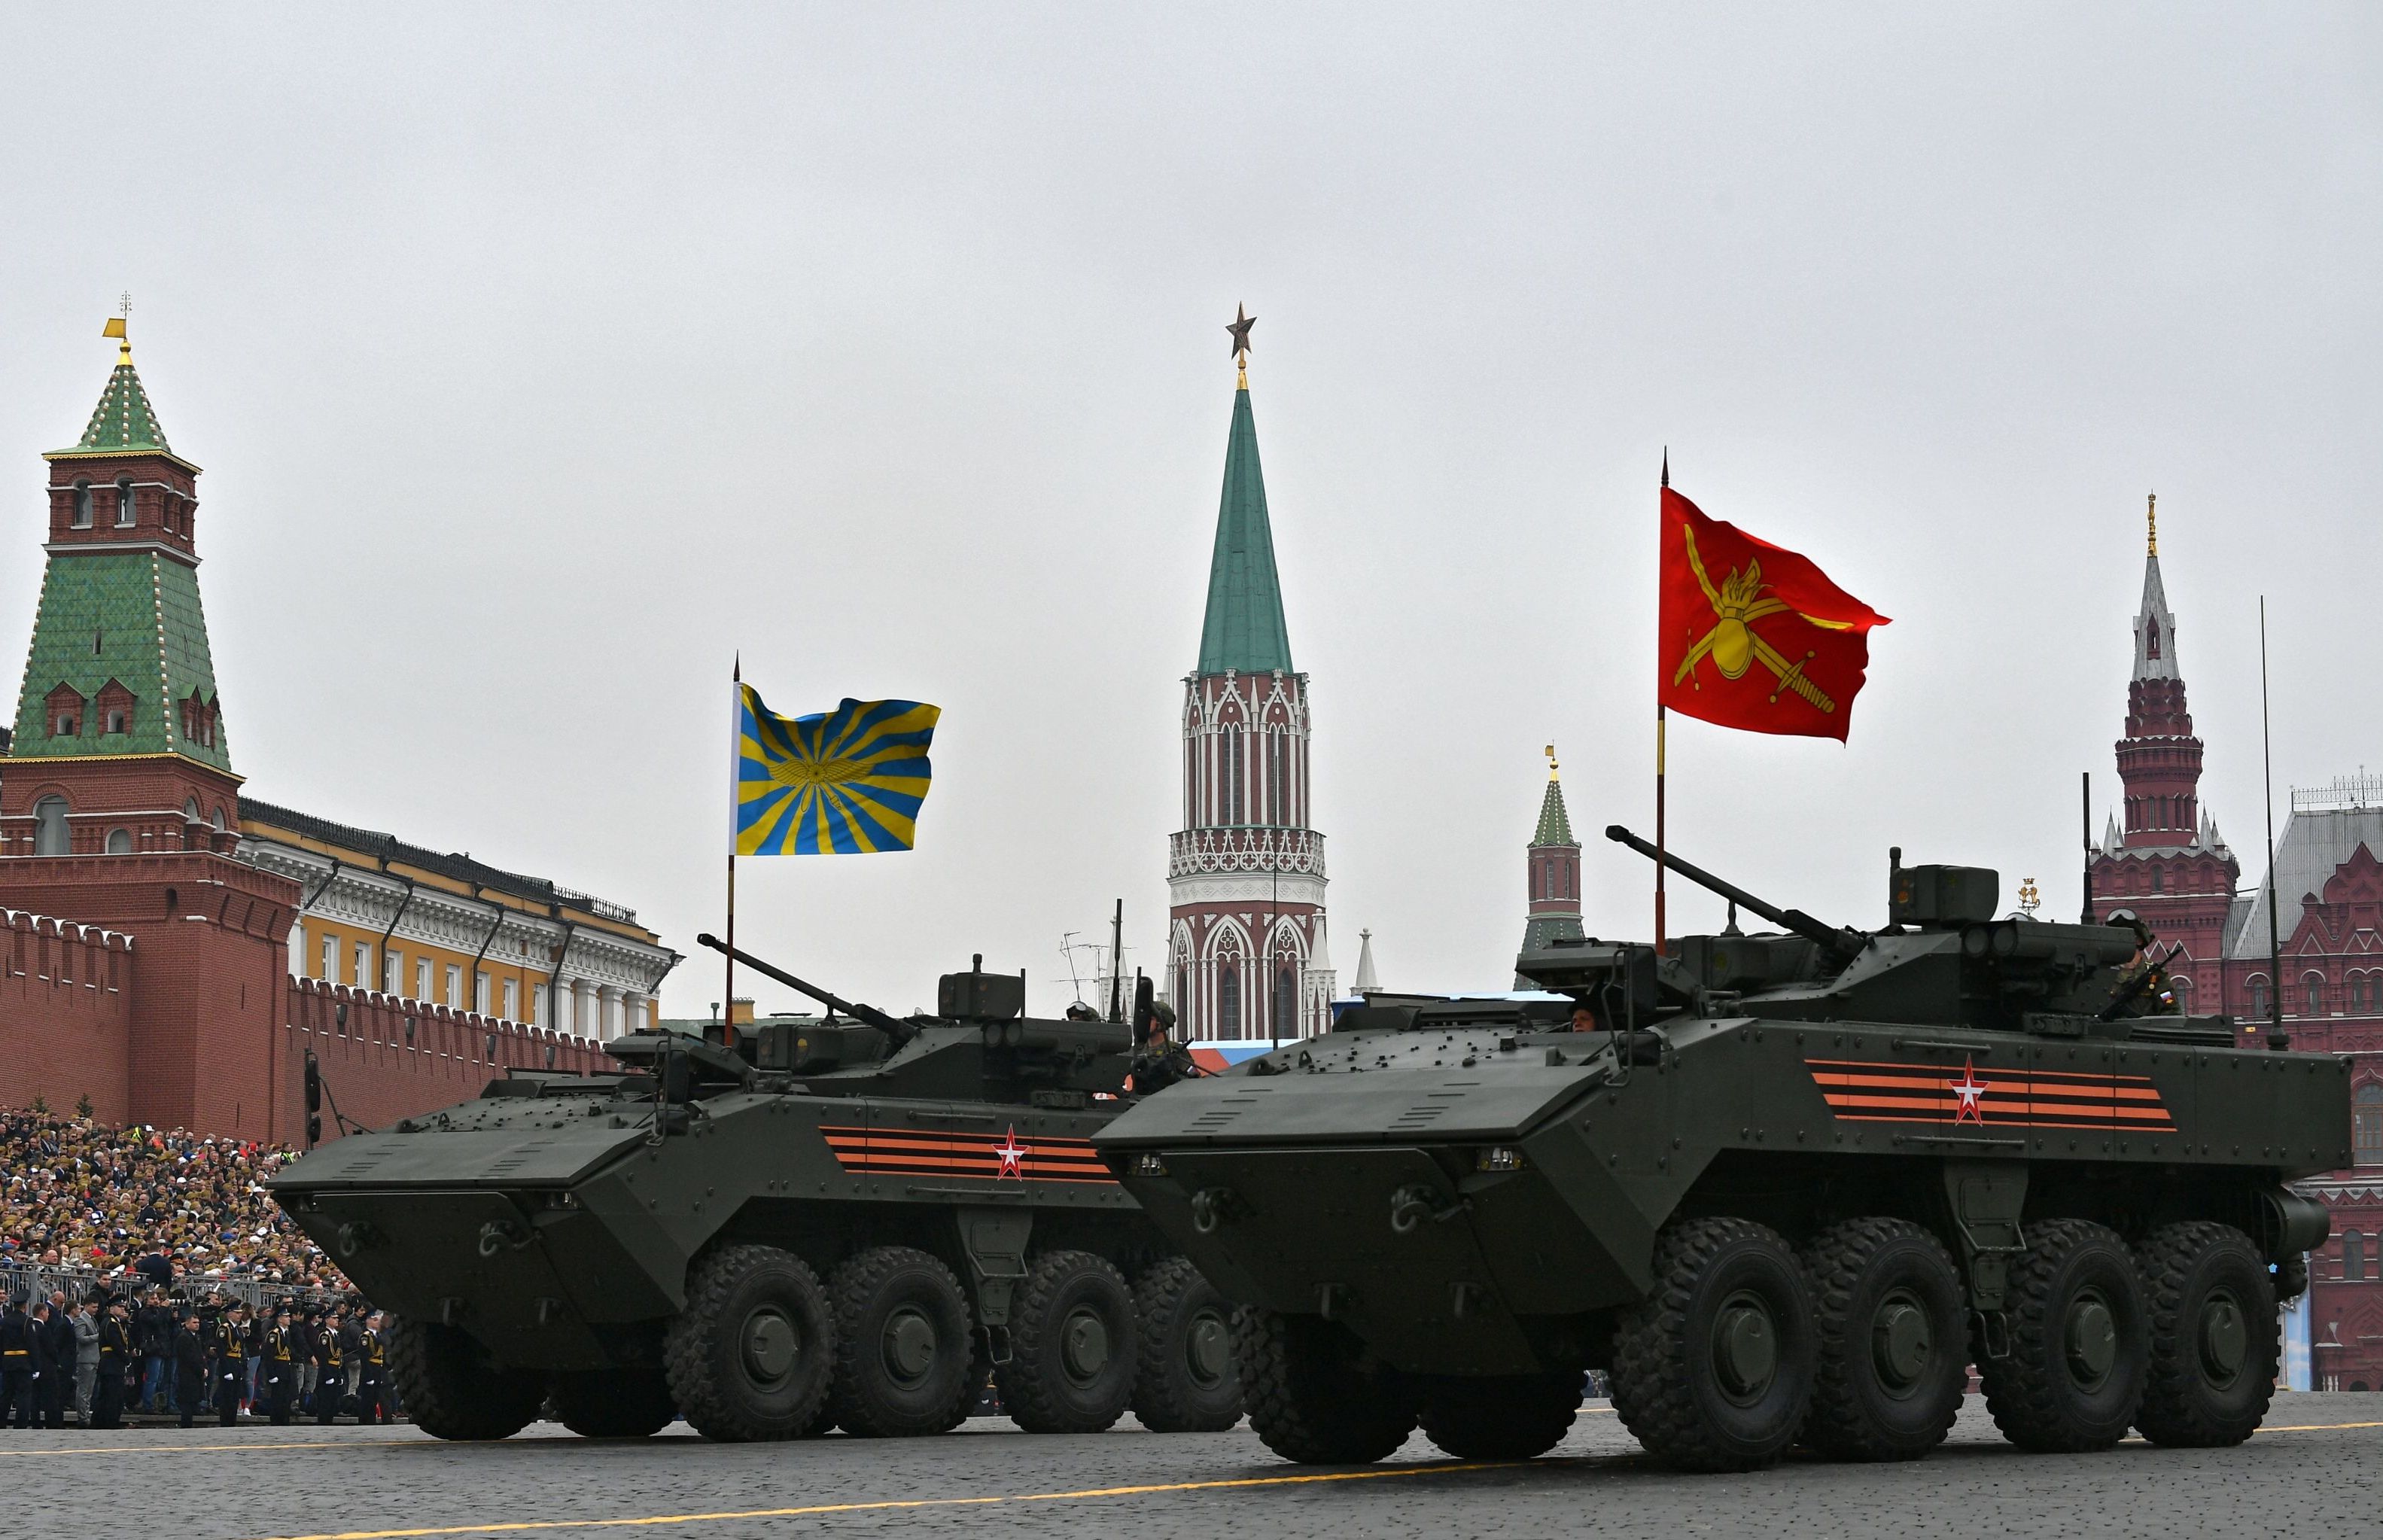 Бронетранспортер "Бумеранг" с боевым модулем К-16 на военном параде на Красной площади